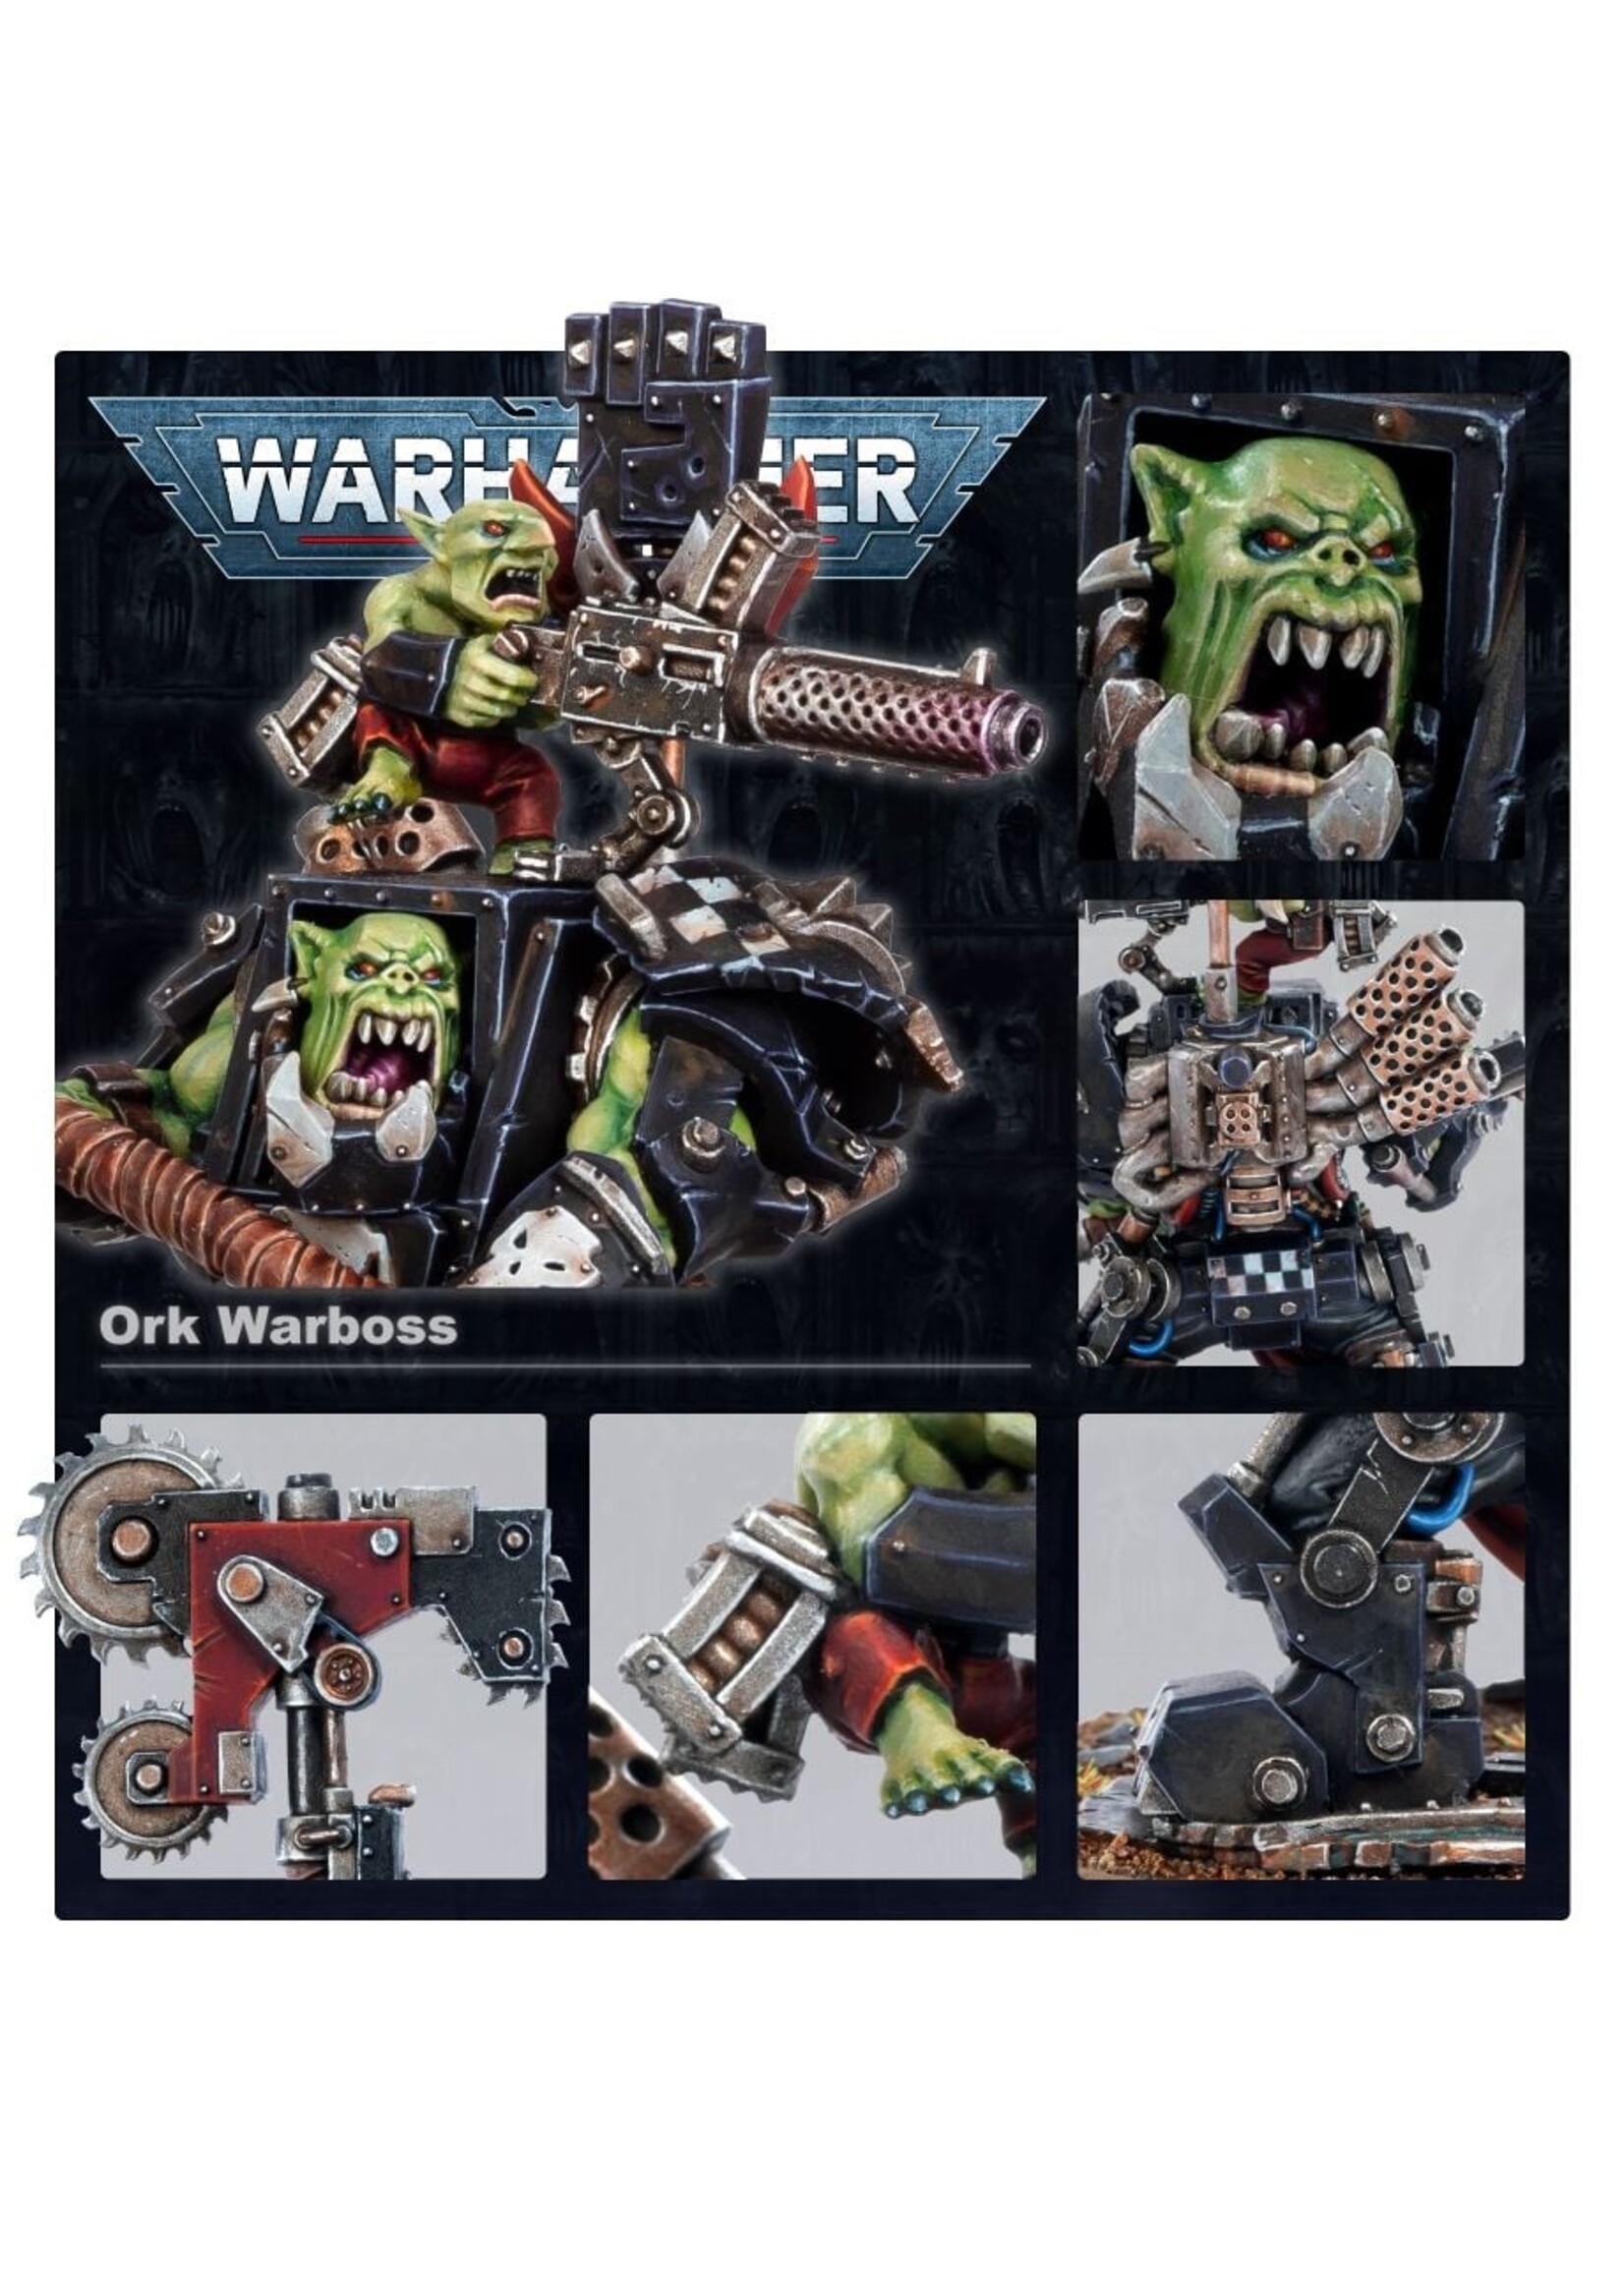 Games Workshop Warhammer 40K Orks